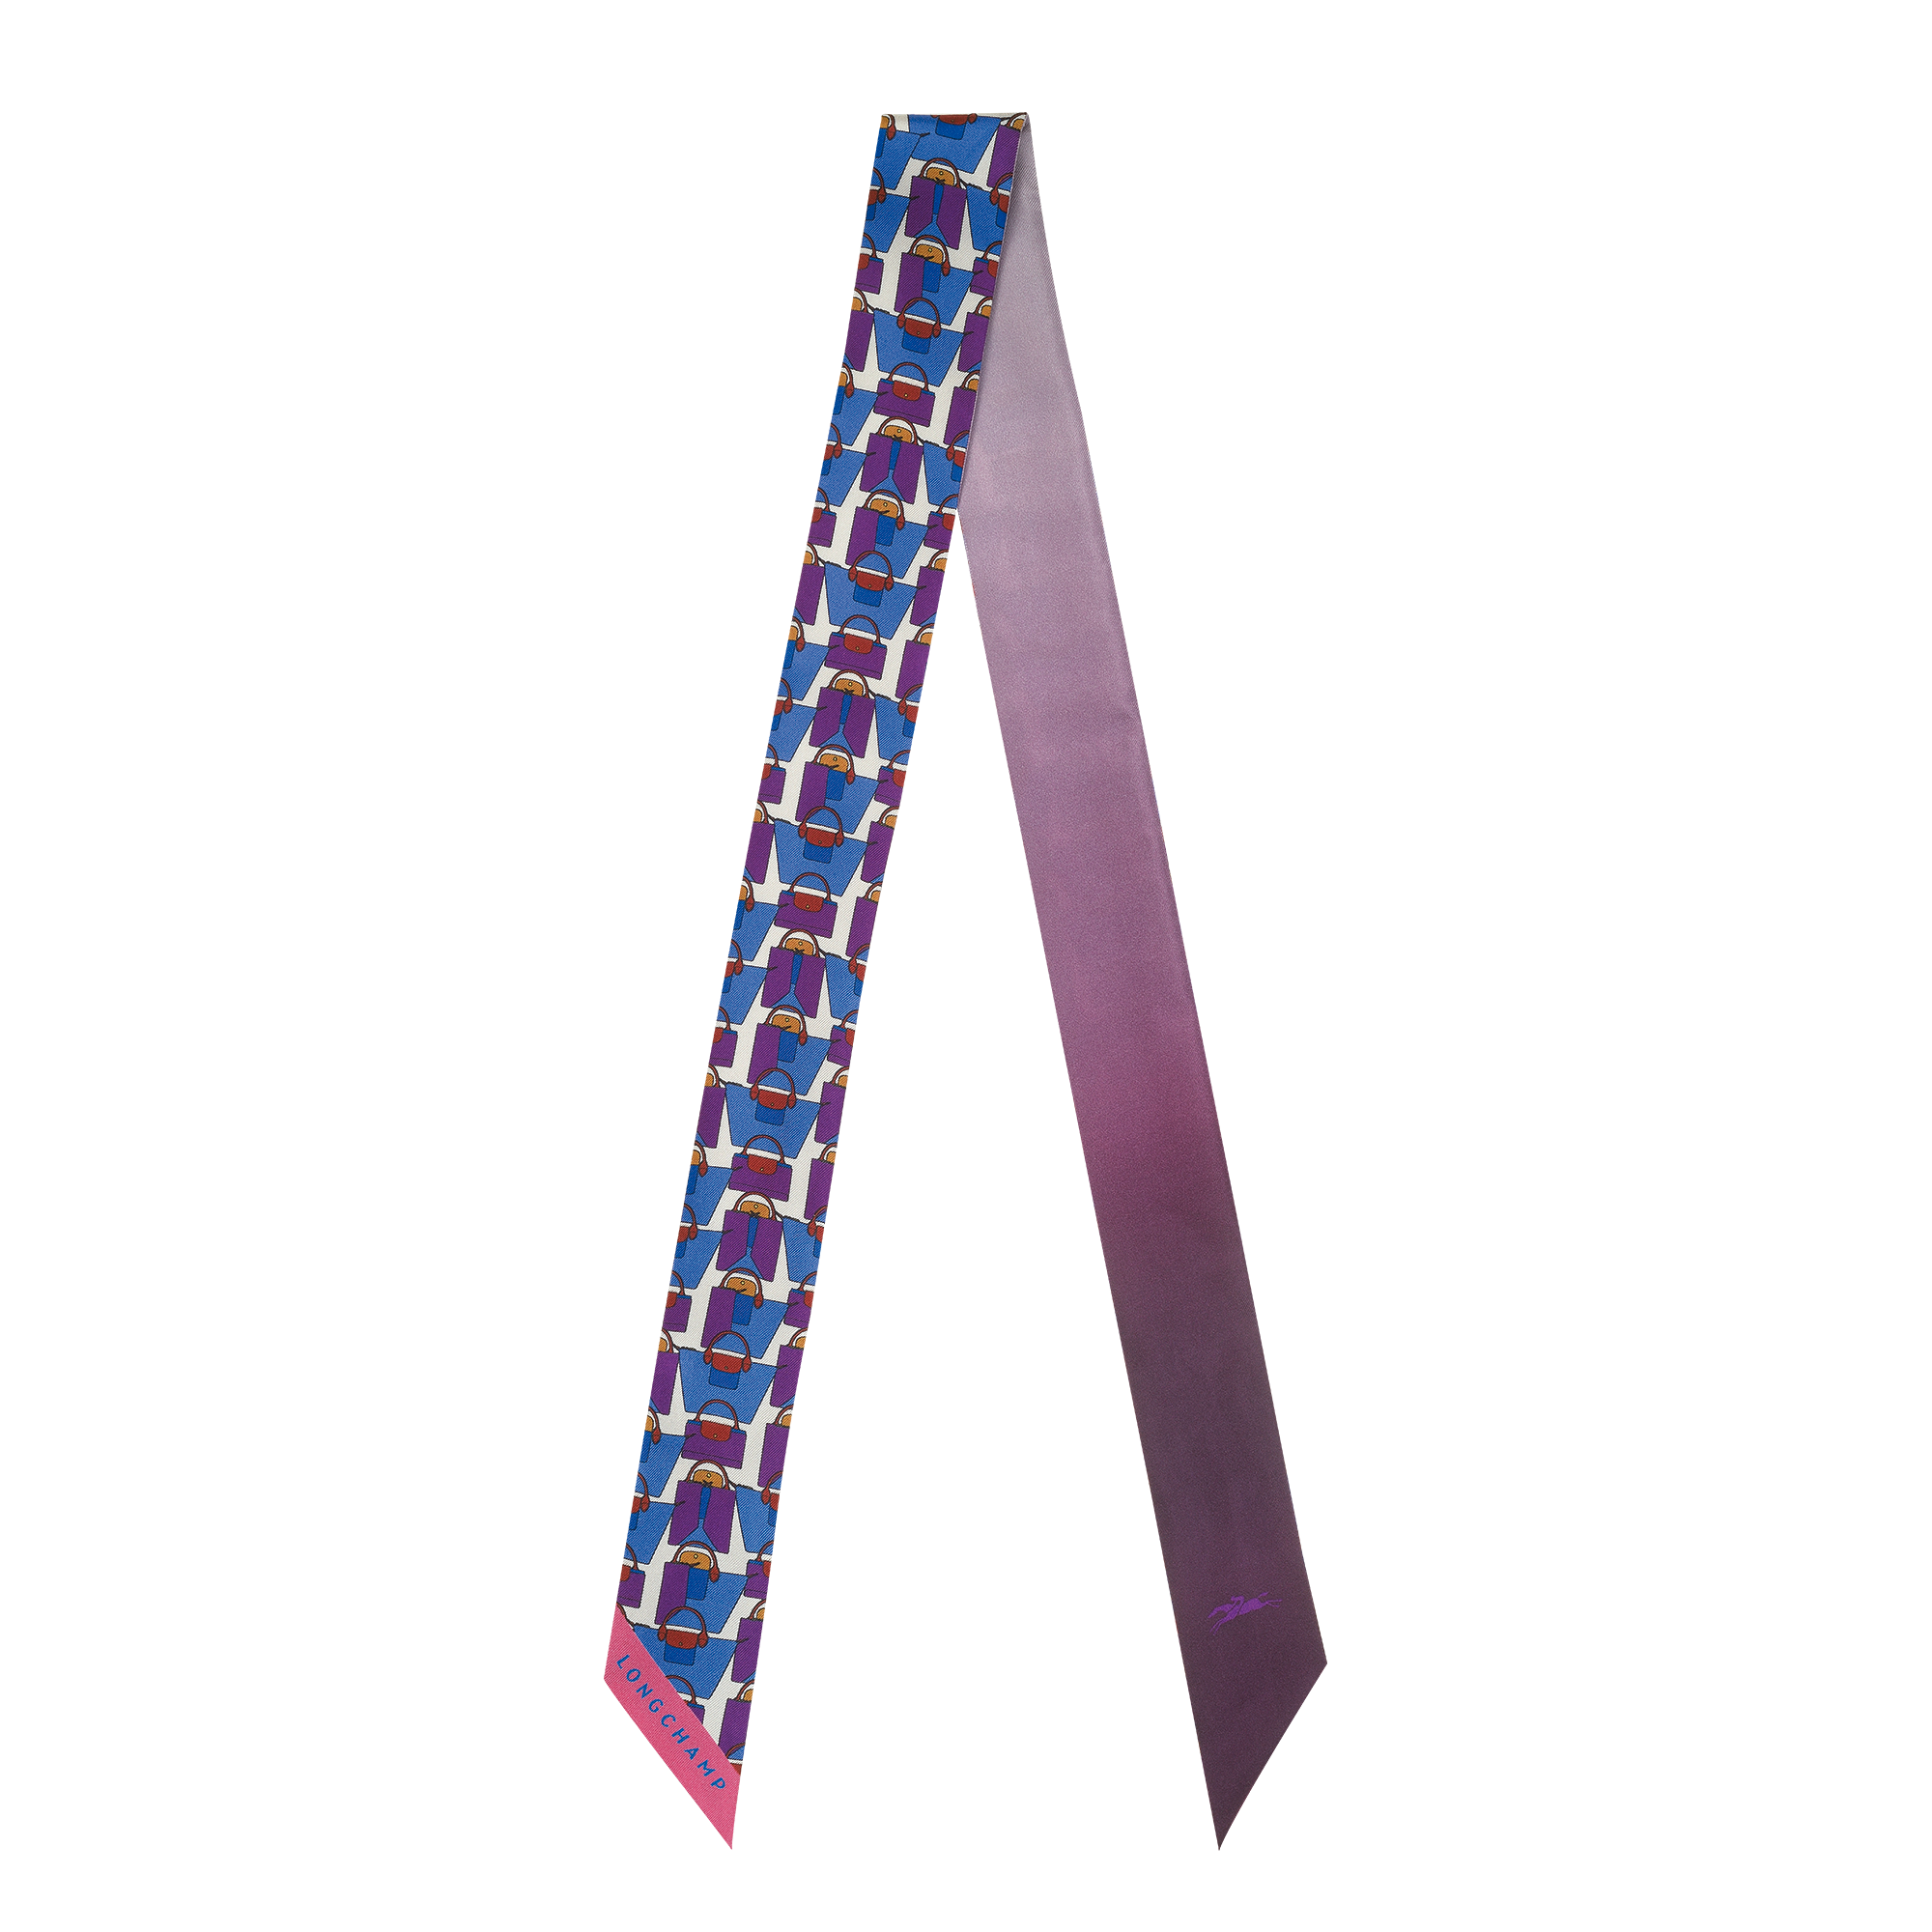 Le Pliage 日本摺紙藝術 絲質緞帶, 藍莓色